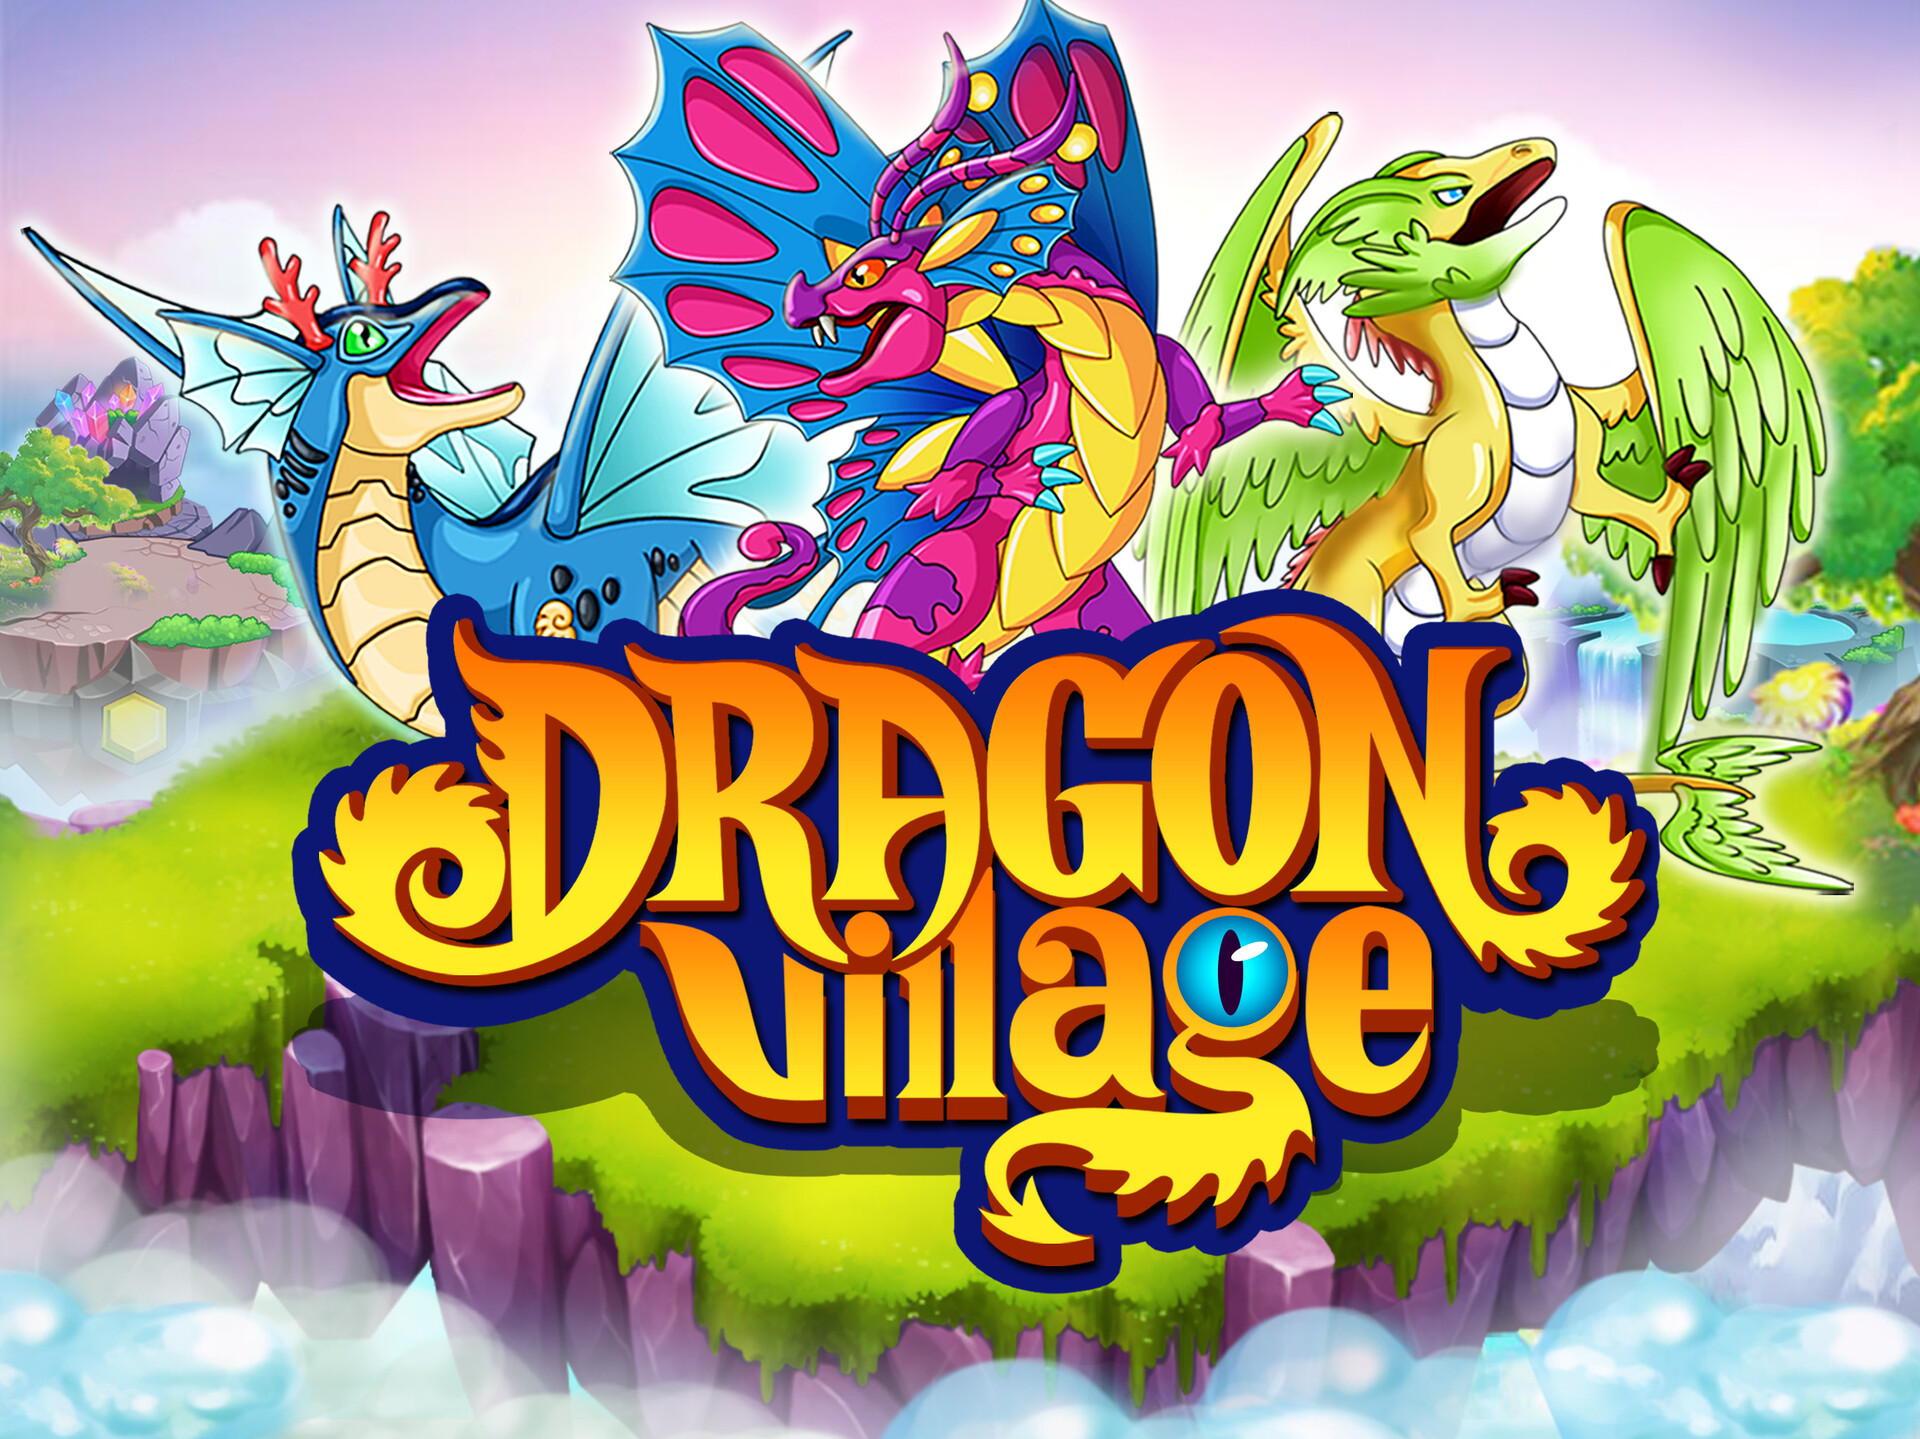 Дракон village. Драгон Вилладж. Игра Dragon Village. Dragon Tamer игра. Игра на телефон Dragon Village.